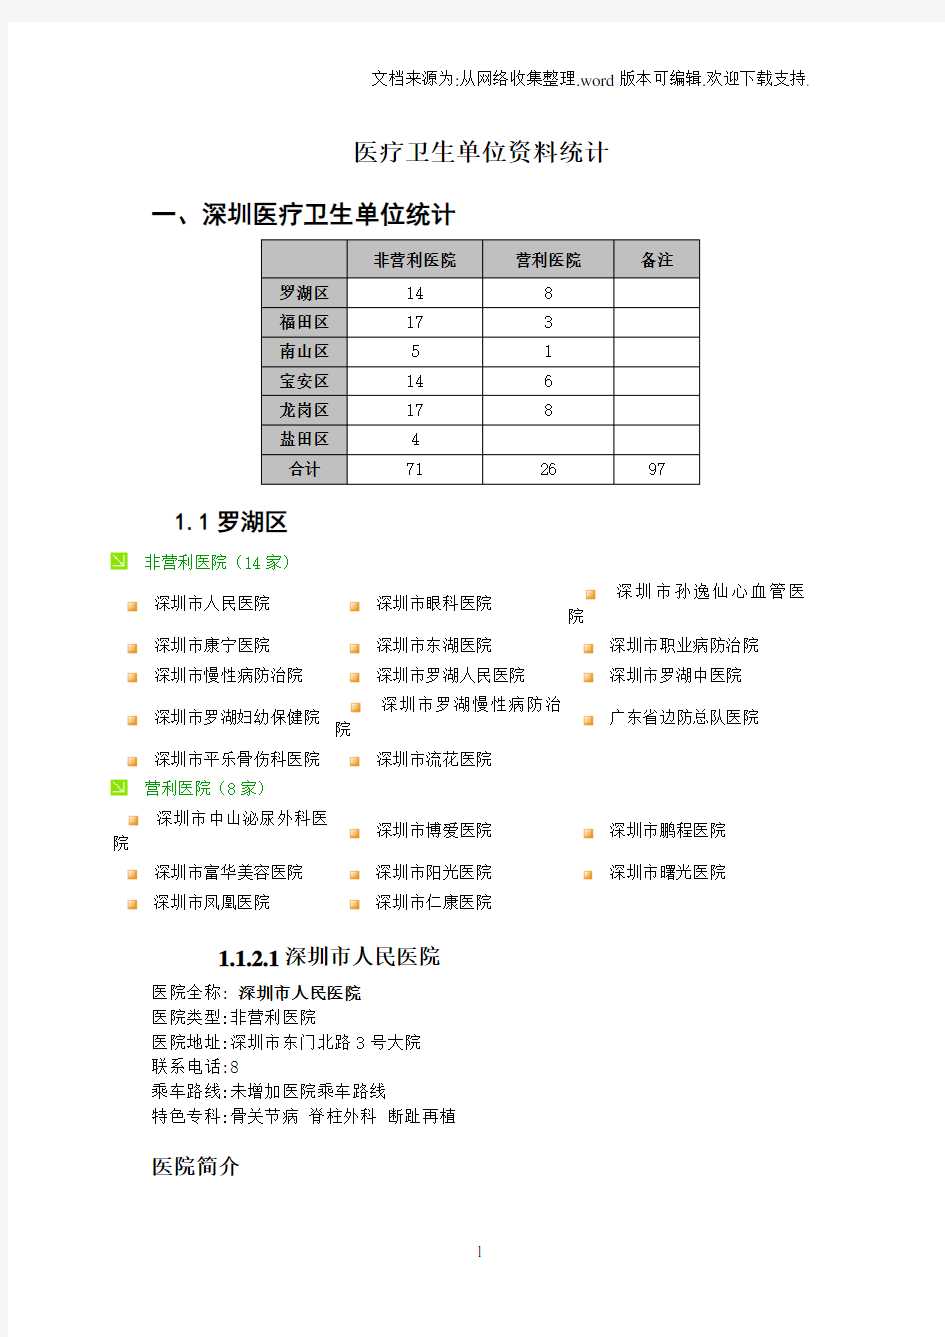 深圳市医疗卫生单位资料统计重要